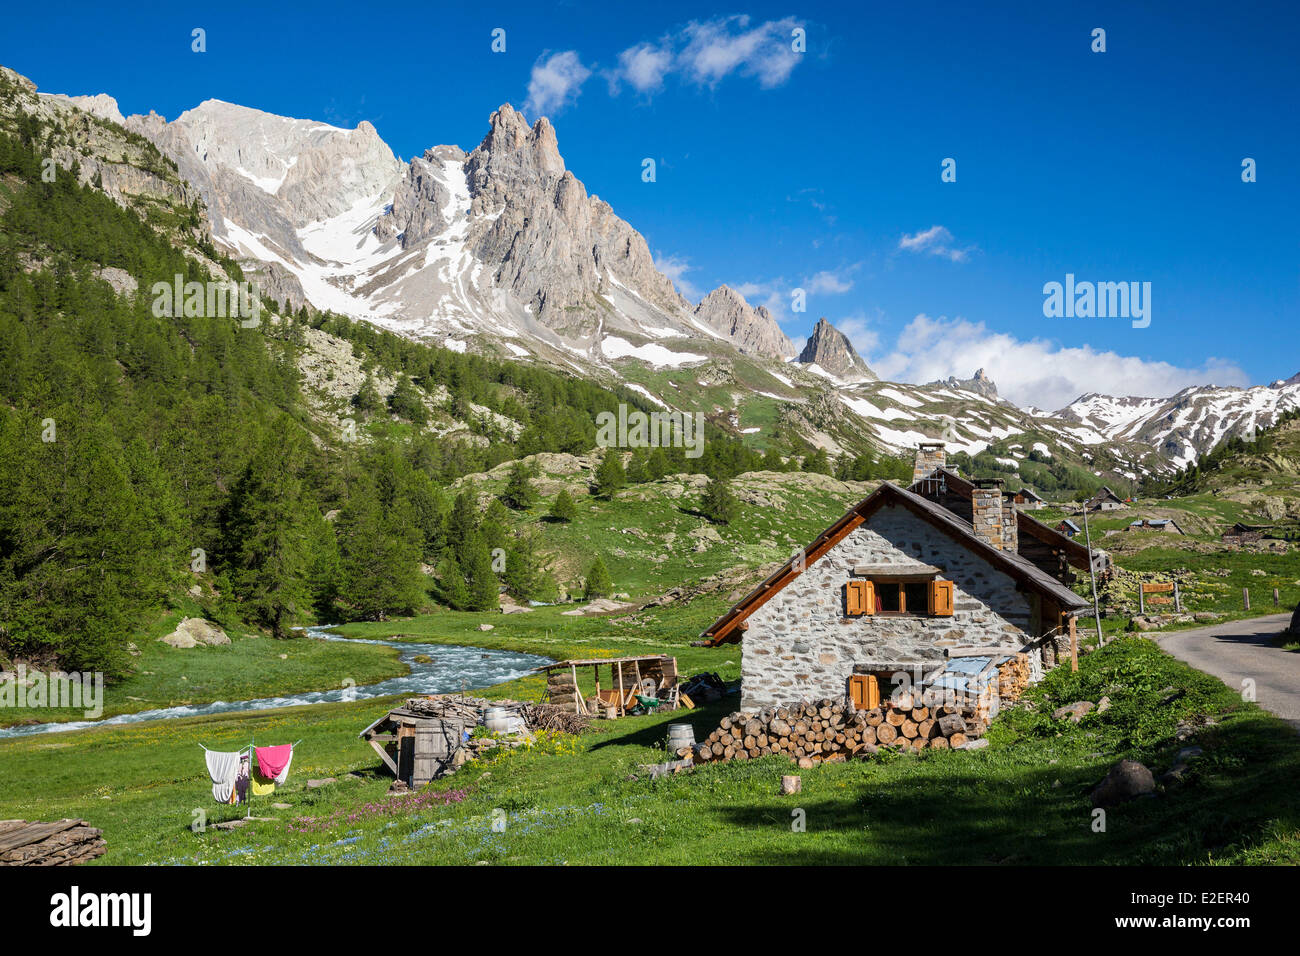 France, Hautes-Alpes, Nevache, vallee de La Claree, view of the Pointe des Cerces (3097m) Stock Photo